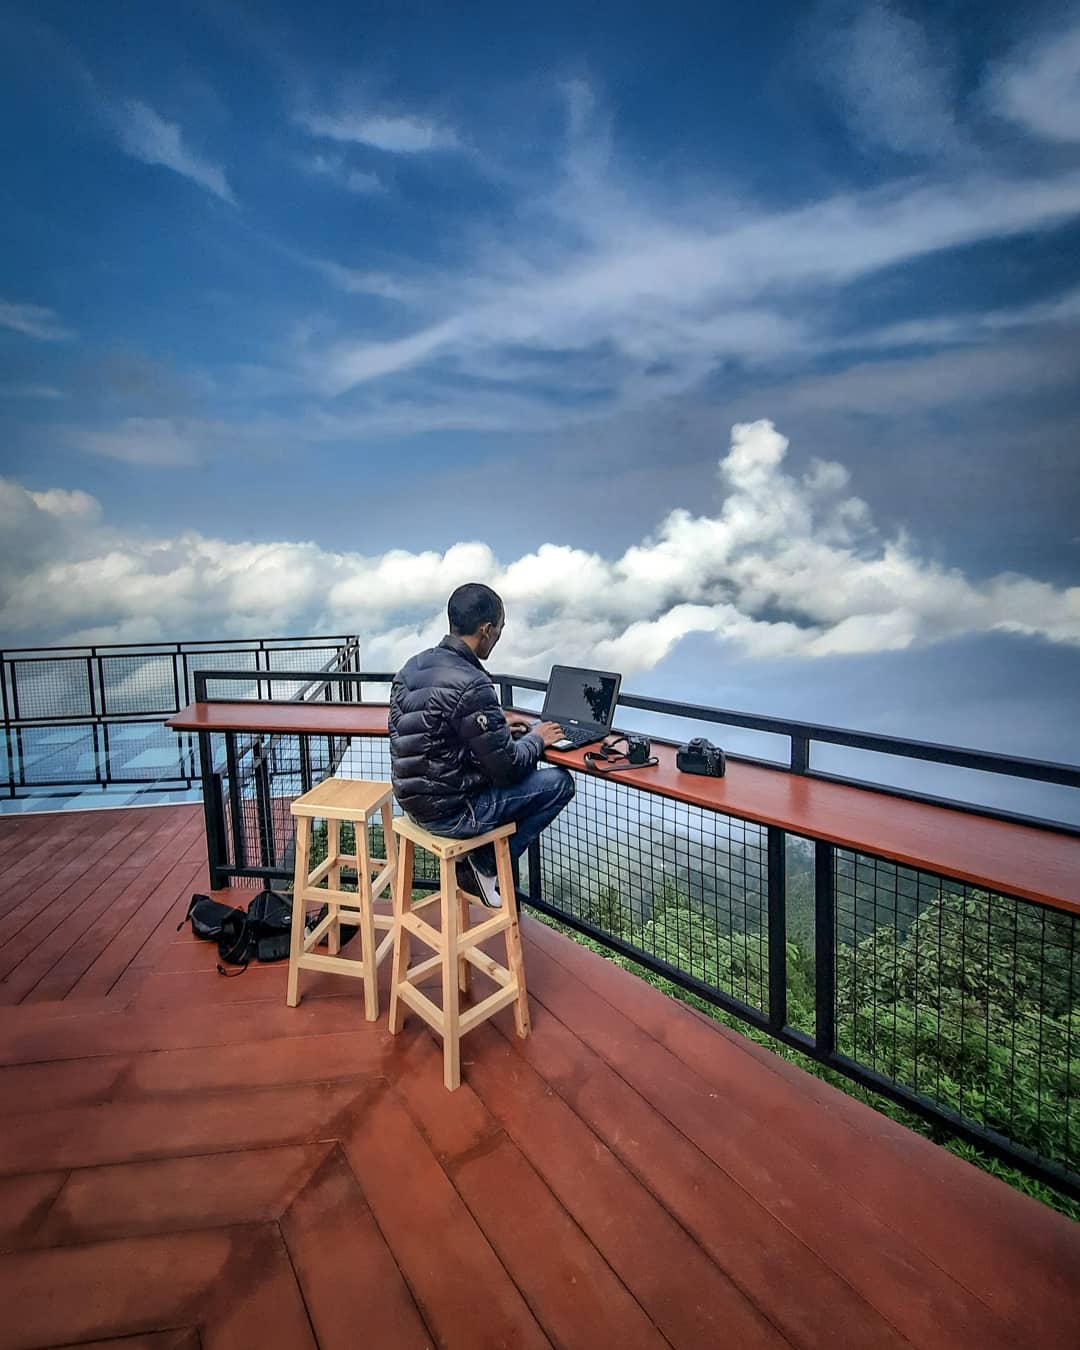 Awang Awang Sky View